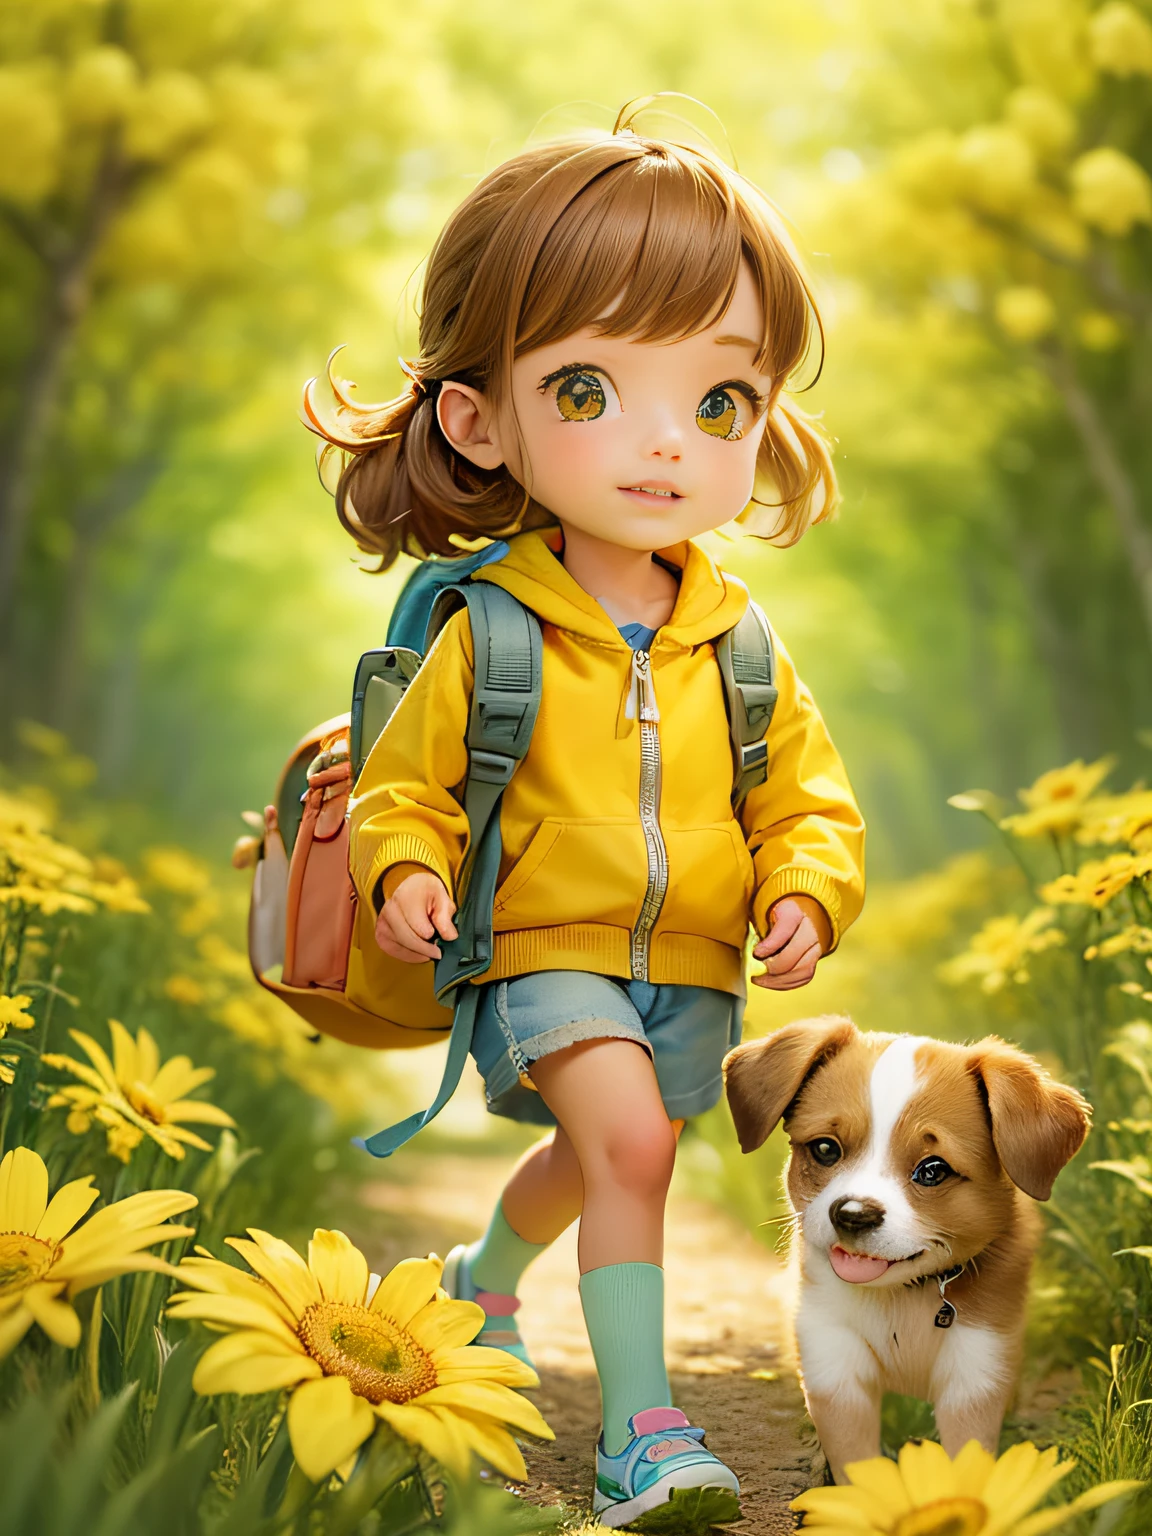 非常可爱 ，背着背包和她可爱的小狗，享受美丽的春日漫步，周围环绕着美丽的黄色花朵和大自然. 该插图为4k分辨率的高清插图，具有非常详细的面部特征和卡通风格的视觉效果.